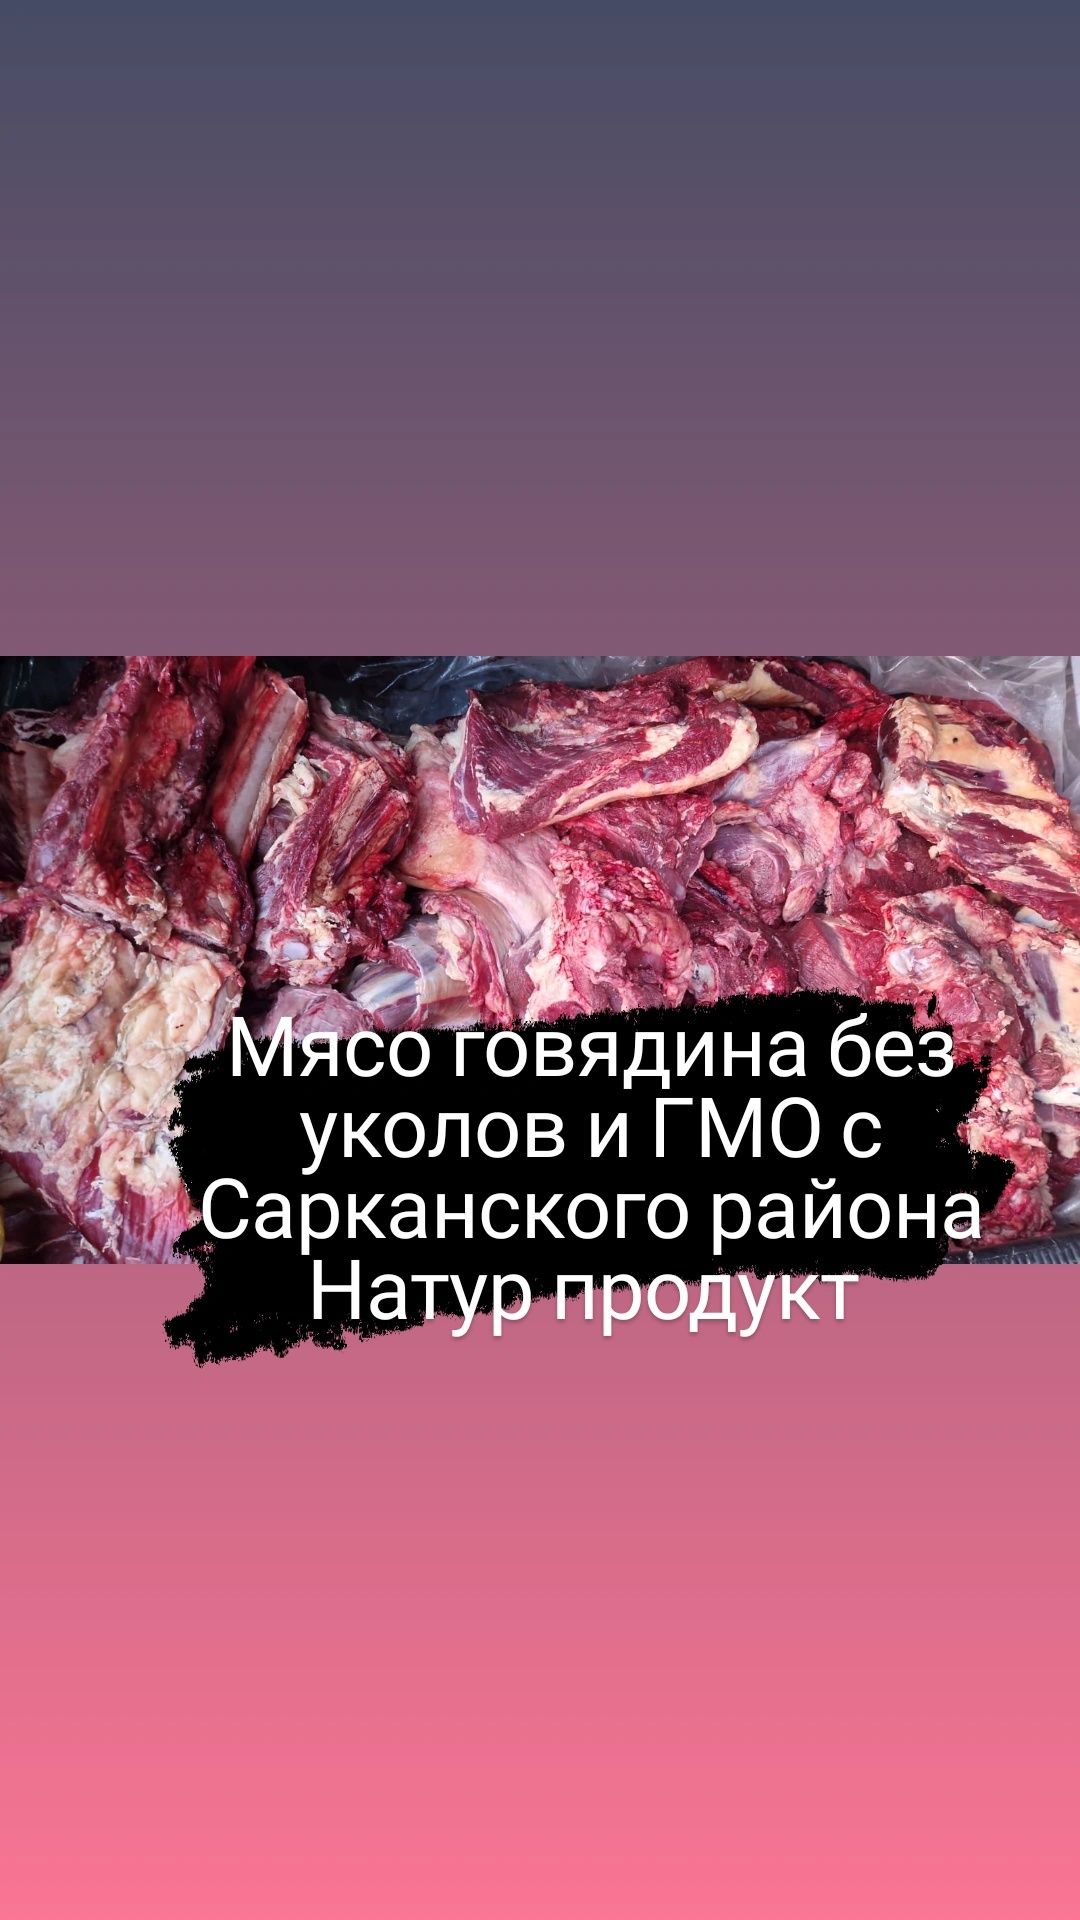 Мясо говядина с Сарканского района, натуральный продукт без ГМО